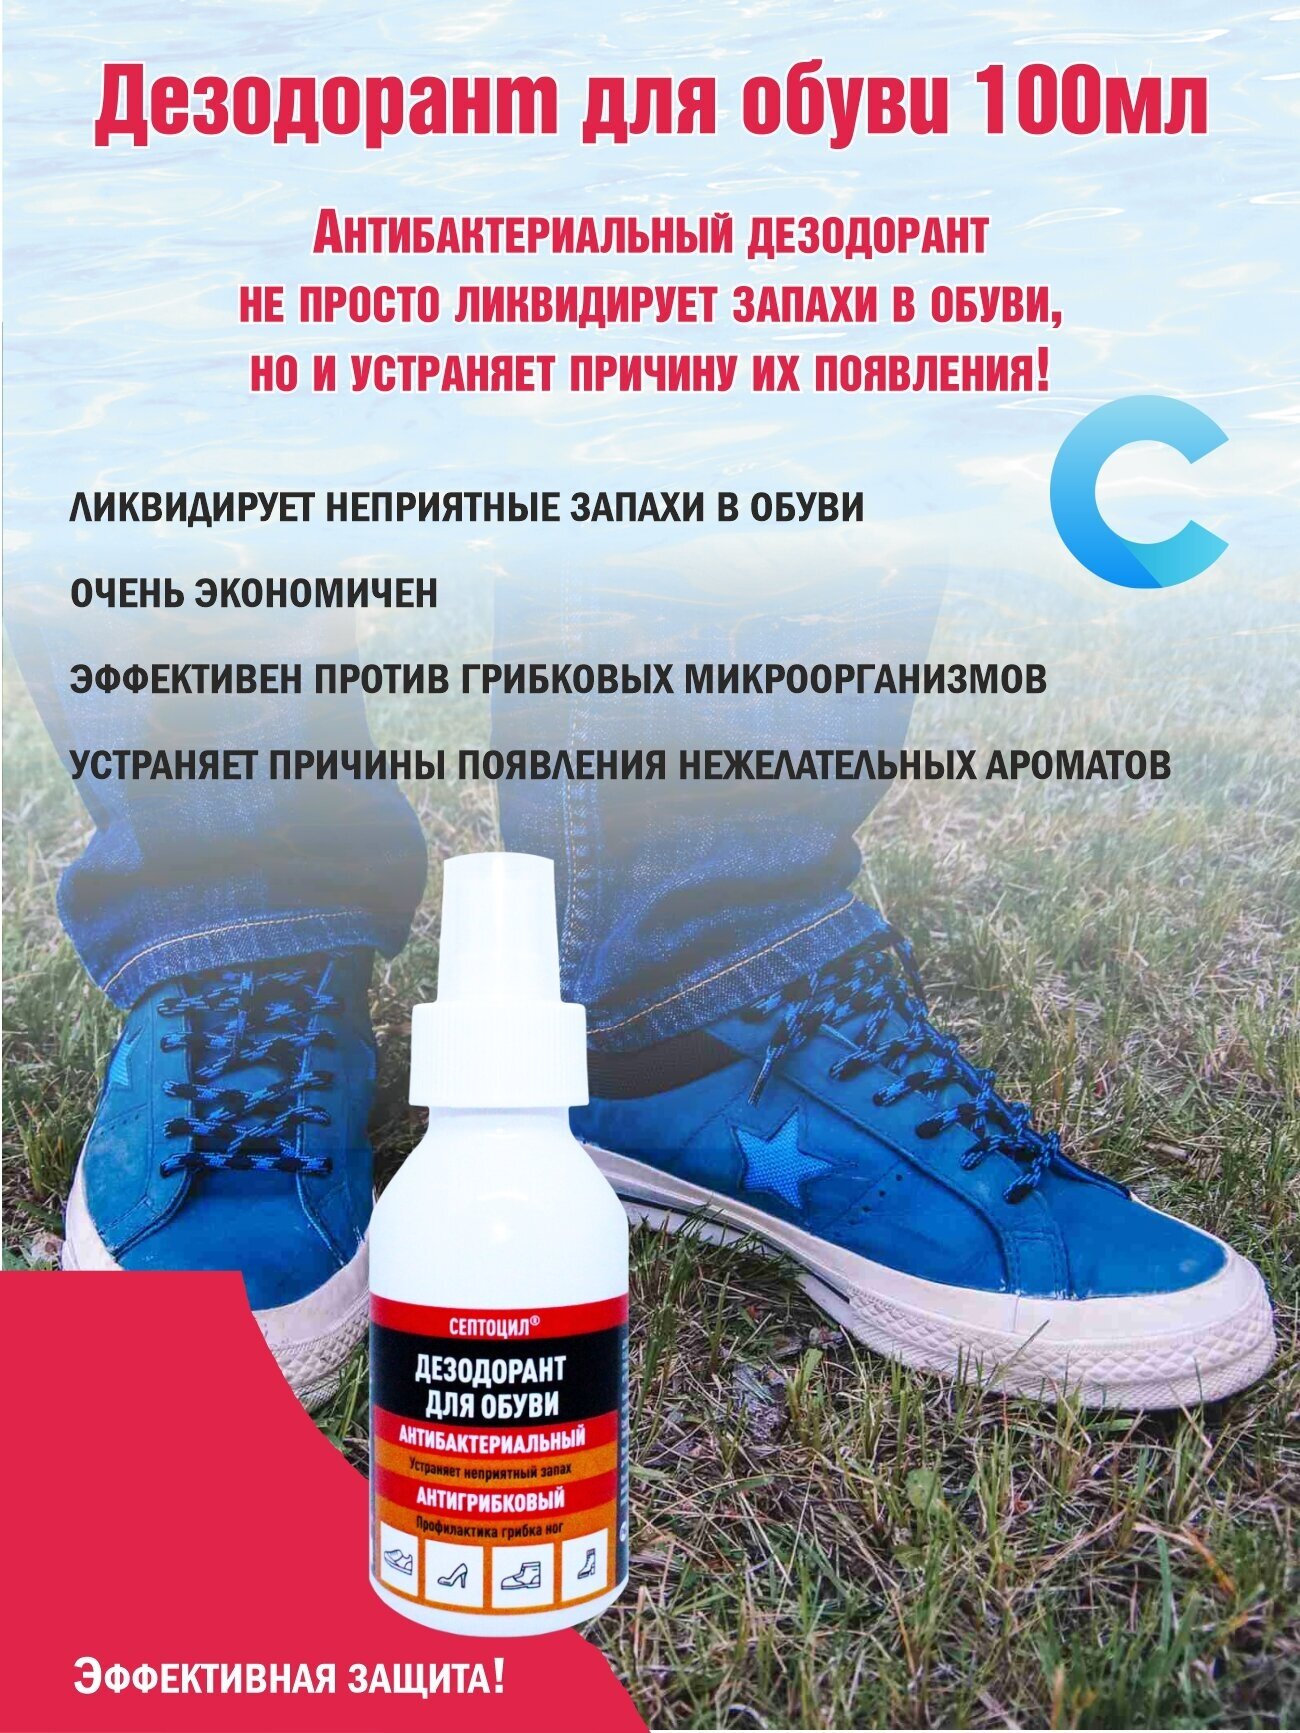 Дезодорант для обуви с антибактериальным и противогрибковым эффектом, борется с причиной запаха, сохраняется 72 часа Септоцил